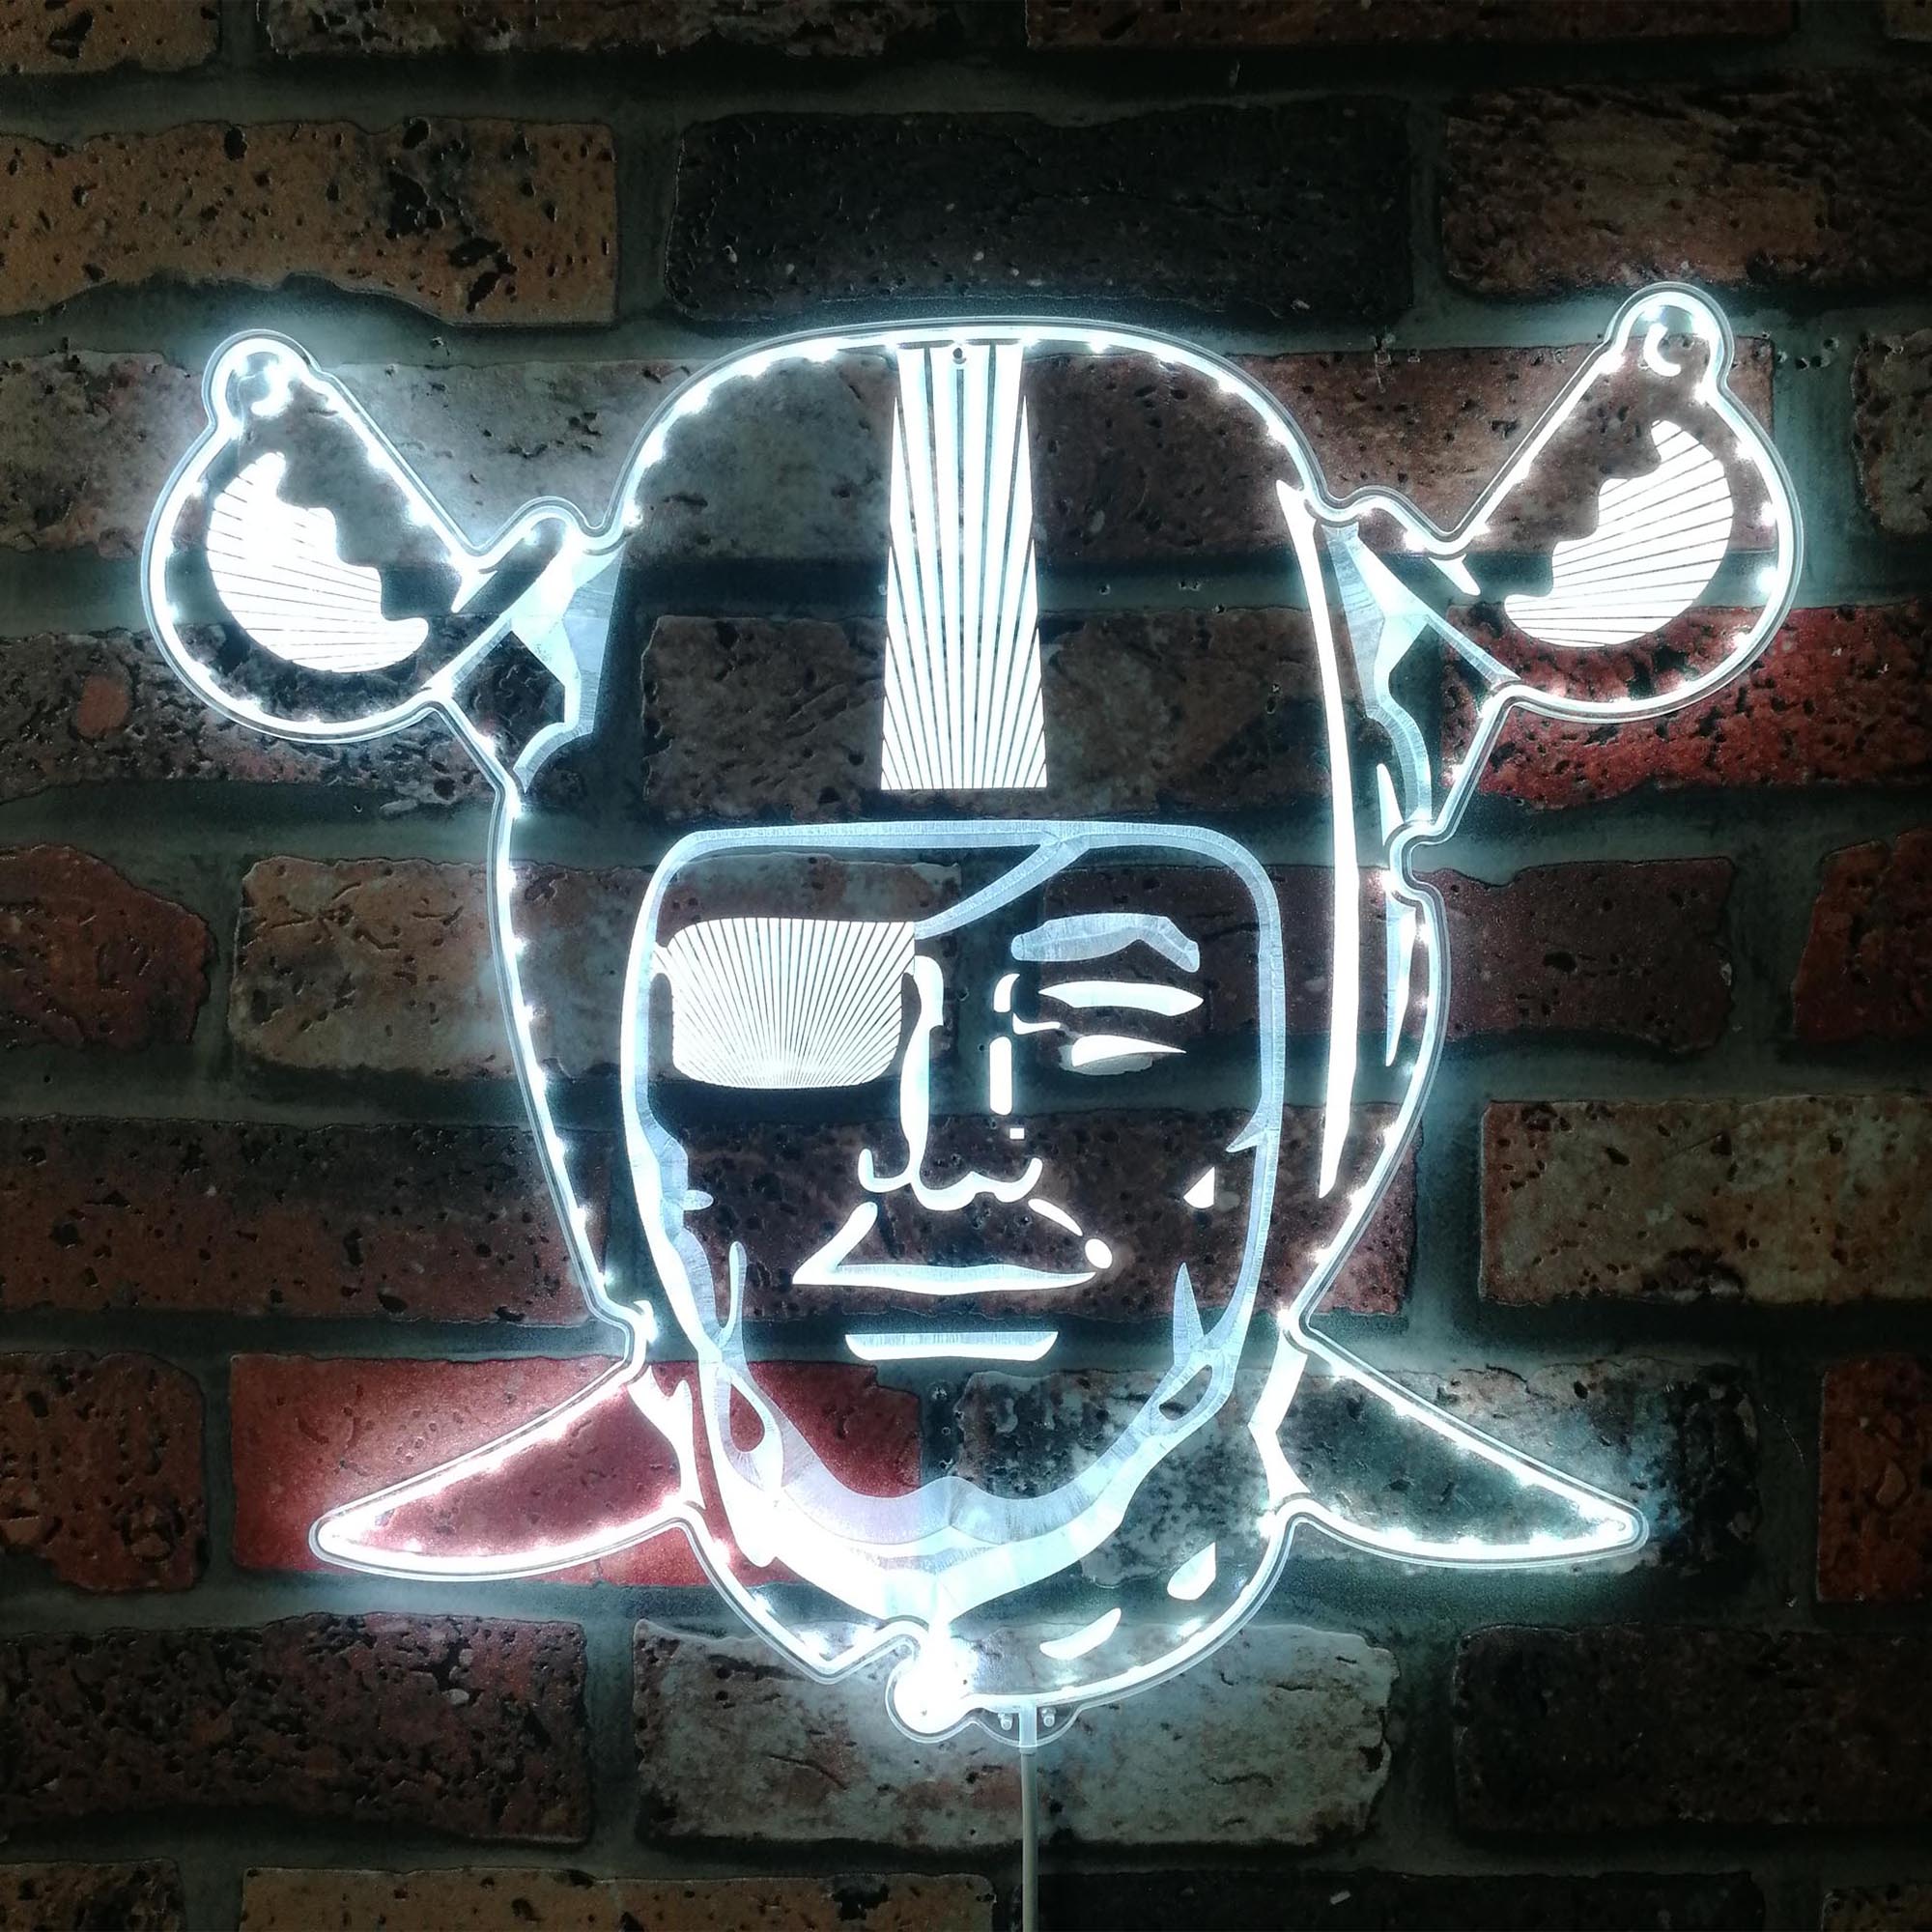 Las Vegas Raiders Dynamic RGB Edge Lit LED Sign